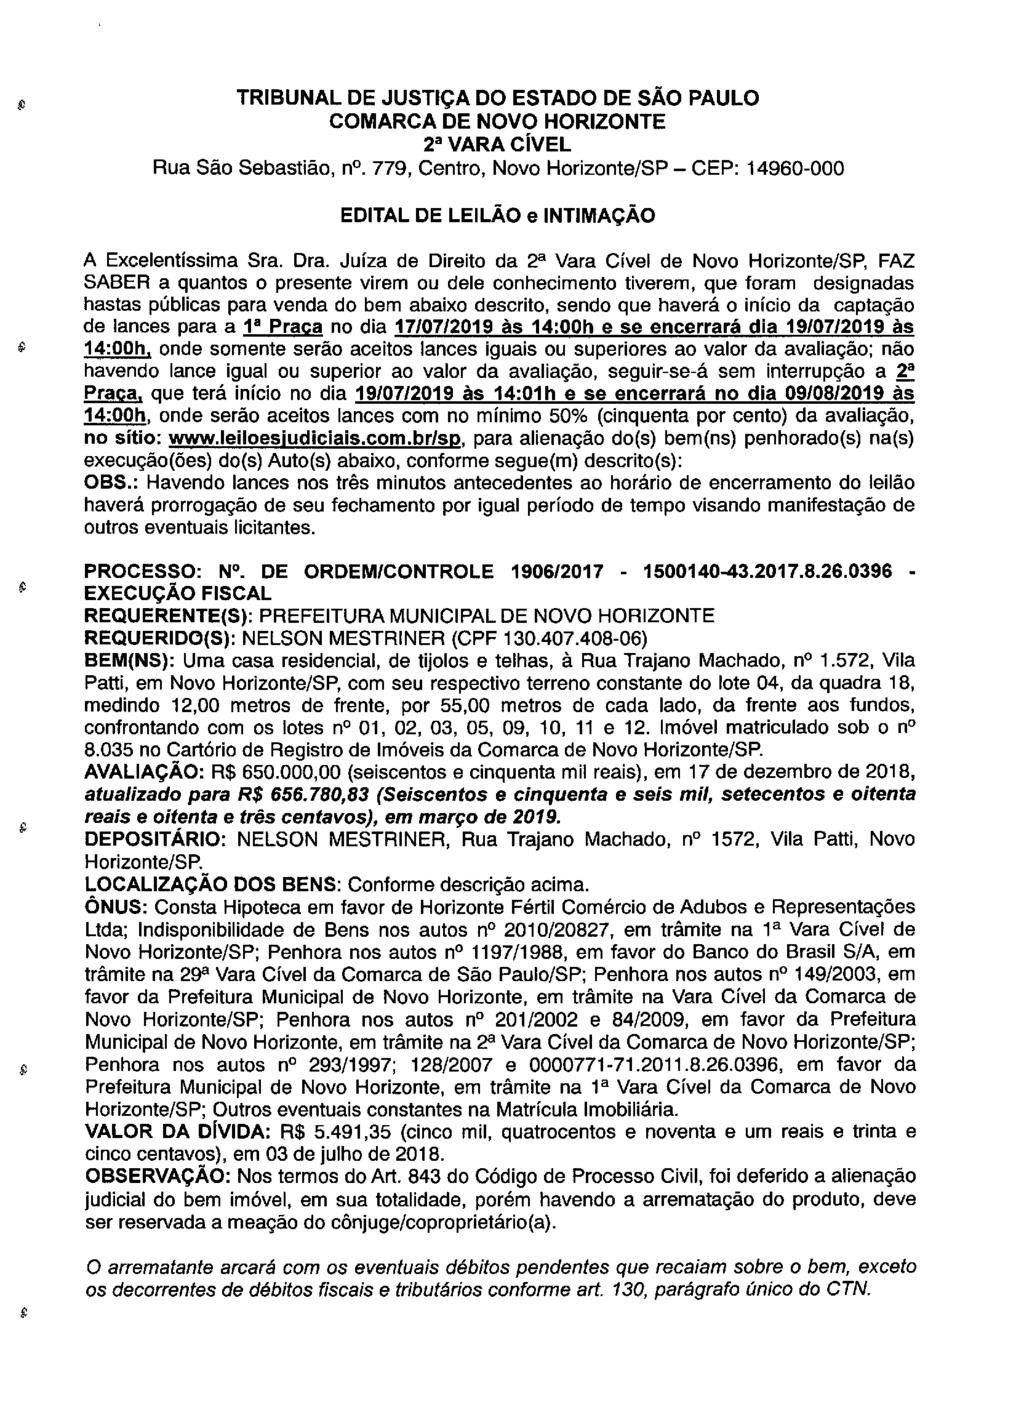 fls. 81 Este documento é cópia do original, assinado digitalmente por LUZIA REGIS DE OLIVEIRA DUARTE, liberado nos autos em 30/04/2019 às 14:47.